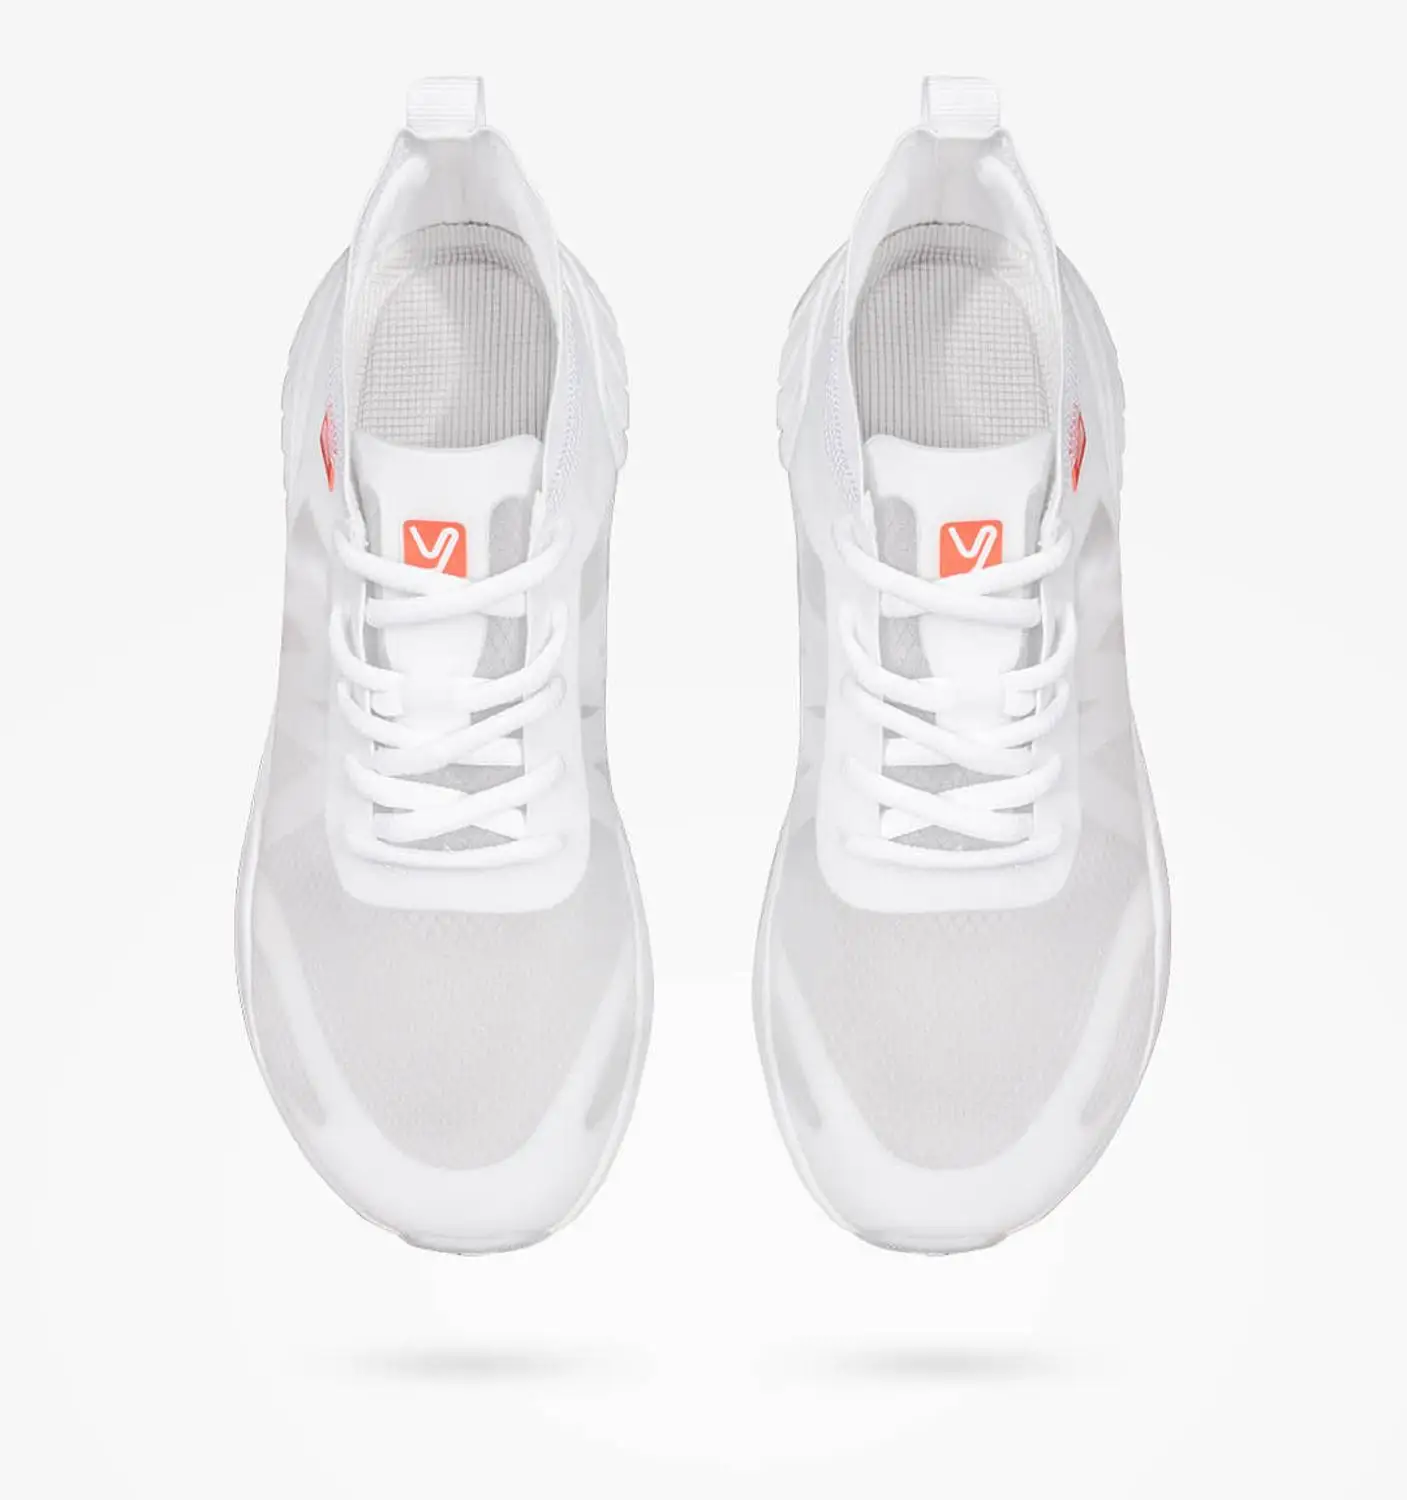 Xiaomi YUNCOO Легкая спортивная обувь из прозрачной моно пряжи легкая и быстросохнущая Мужская и женская дышащая повседневная обувь - Цвет: white 37